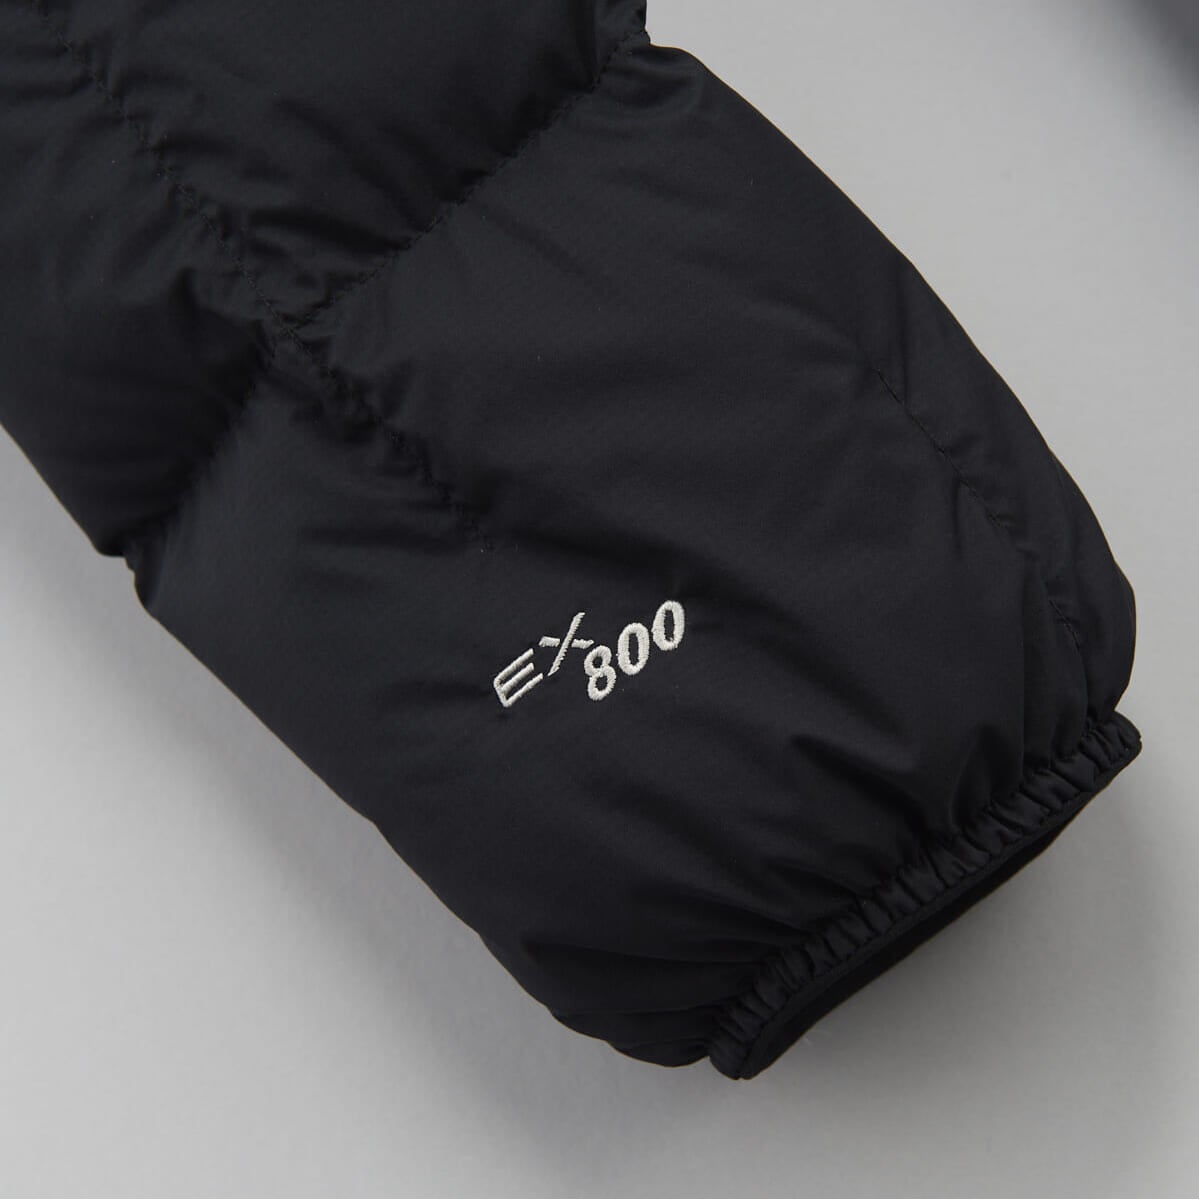 モンベルの黒いダウンジャケット「ネージュダウンパーカ」の800フィルパワーのロゴ